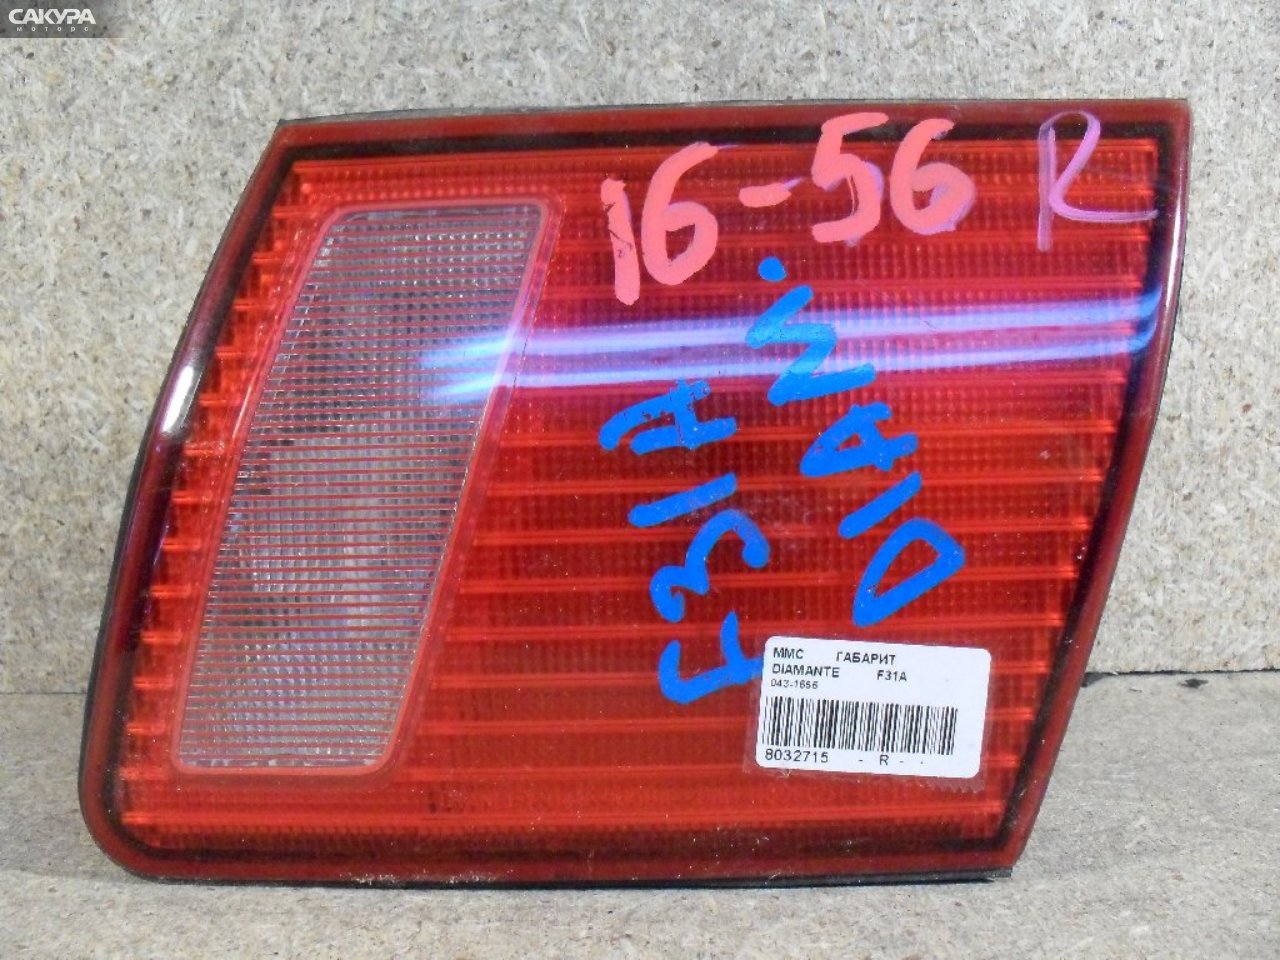 Фонарь вставка багажника правый Mitsubishi Diamante F31A 043-1656: купить в Сакура Абакан.